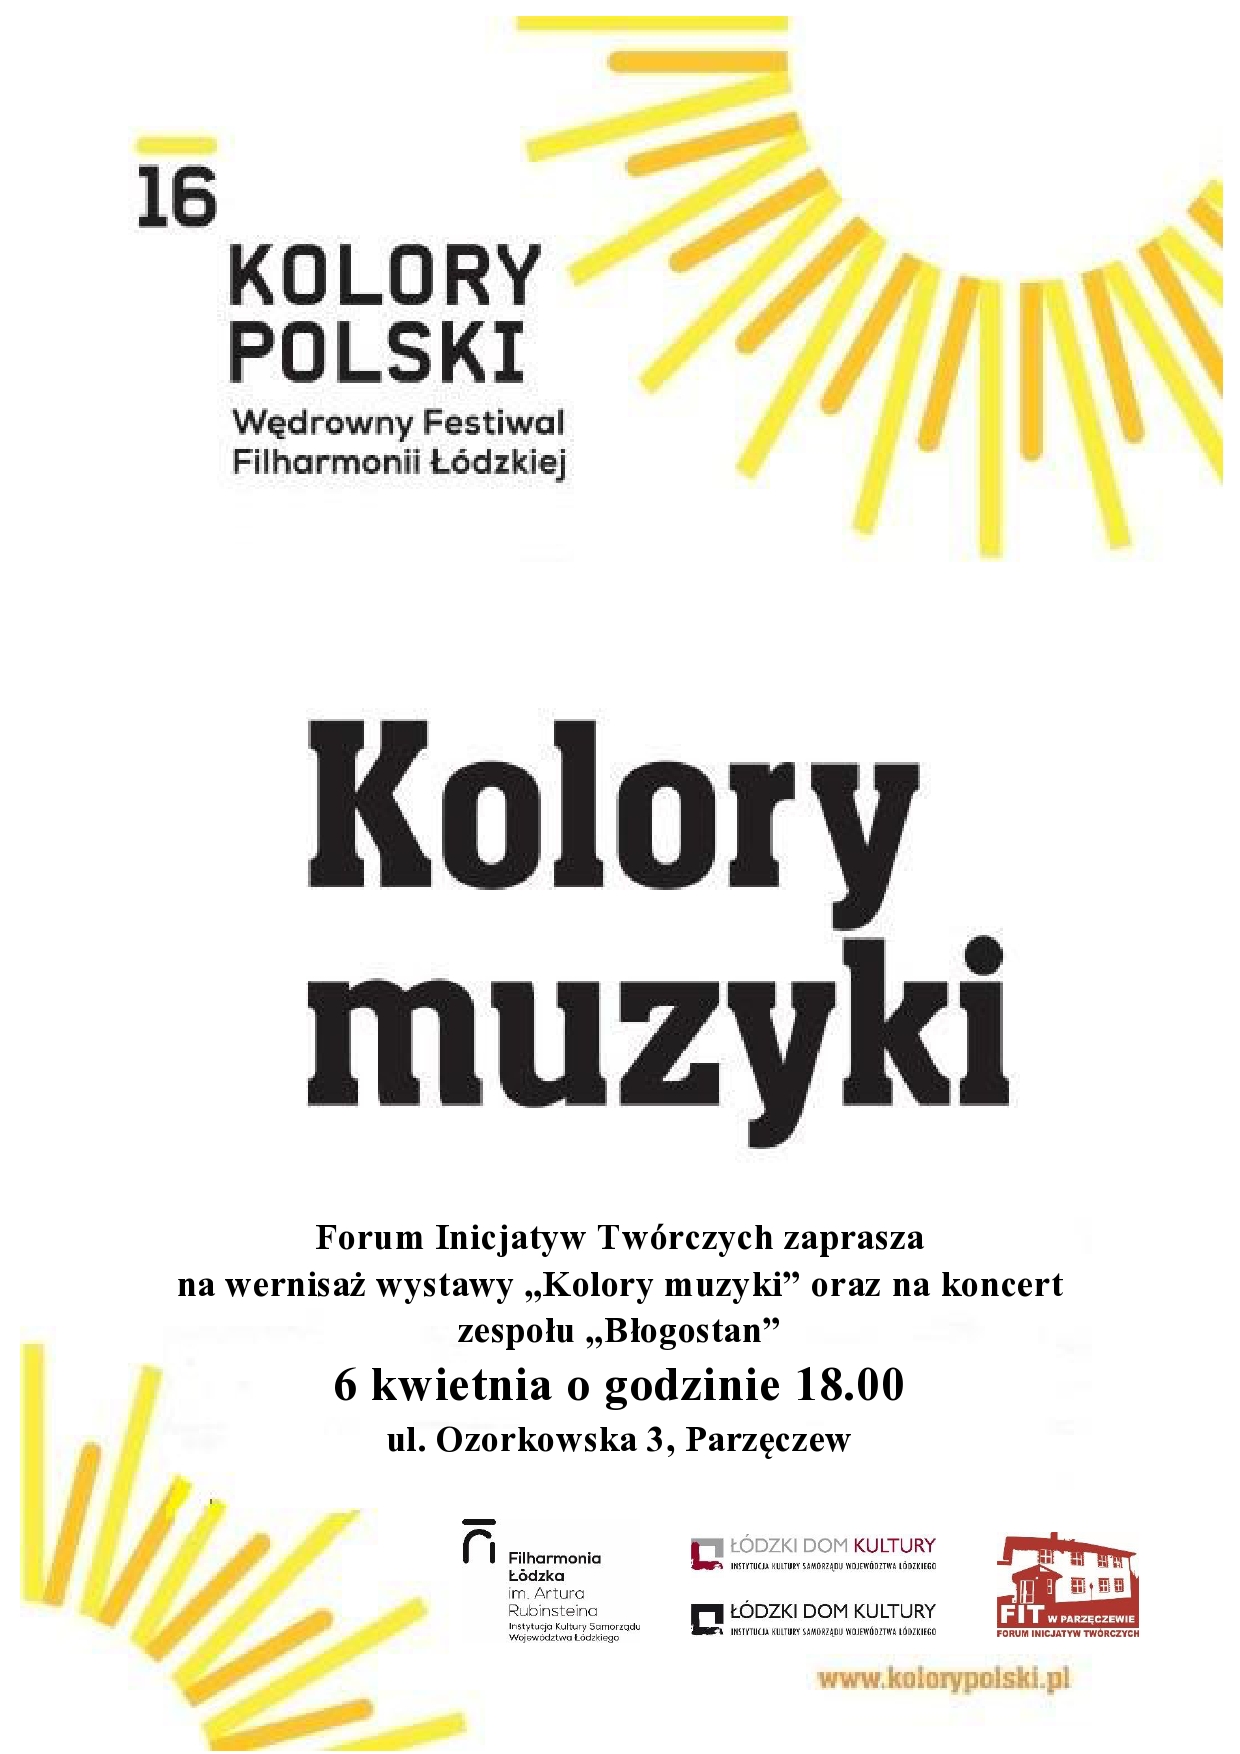 Wernisaż wystawy "Kolory muzyki" oraz koncert zespołu "Błogostan"